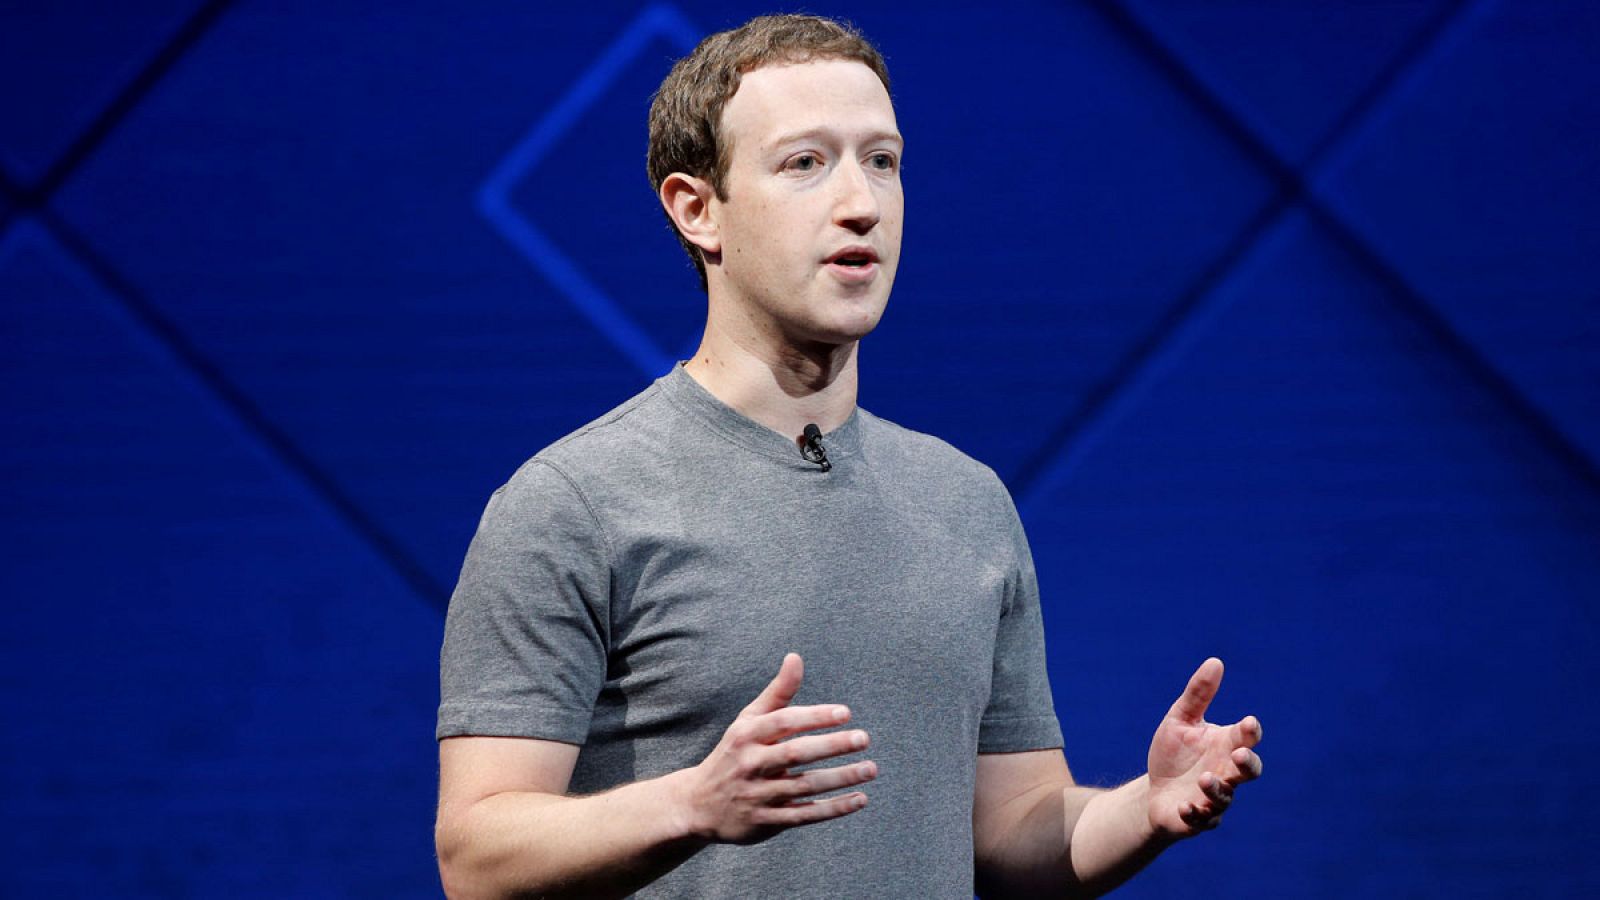 El fundador y consejero delegado de Facebook, Mark Zuckerberg, durante un discurso en abril de 2017.